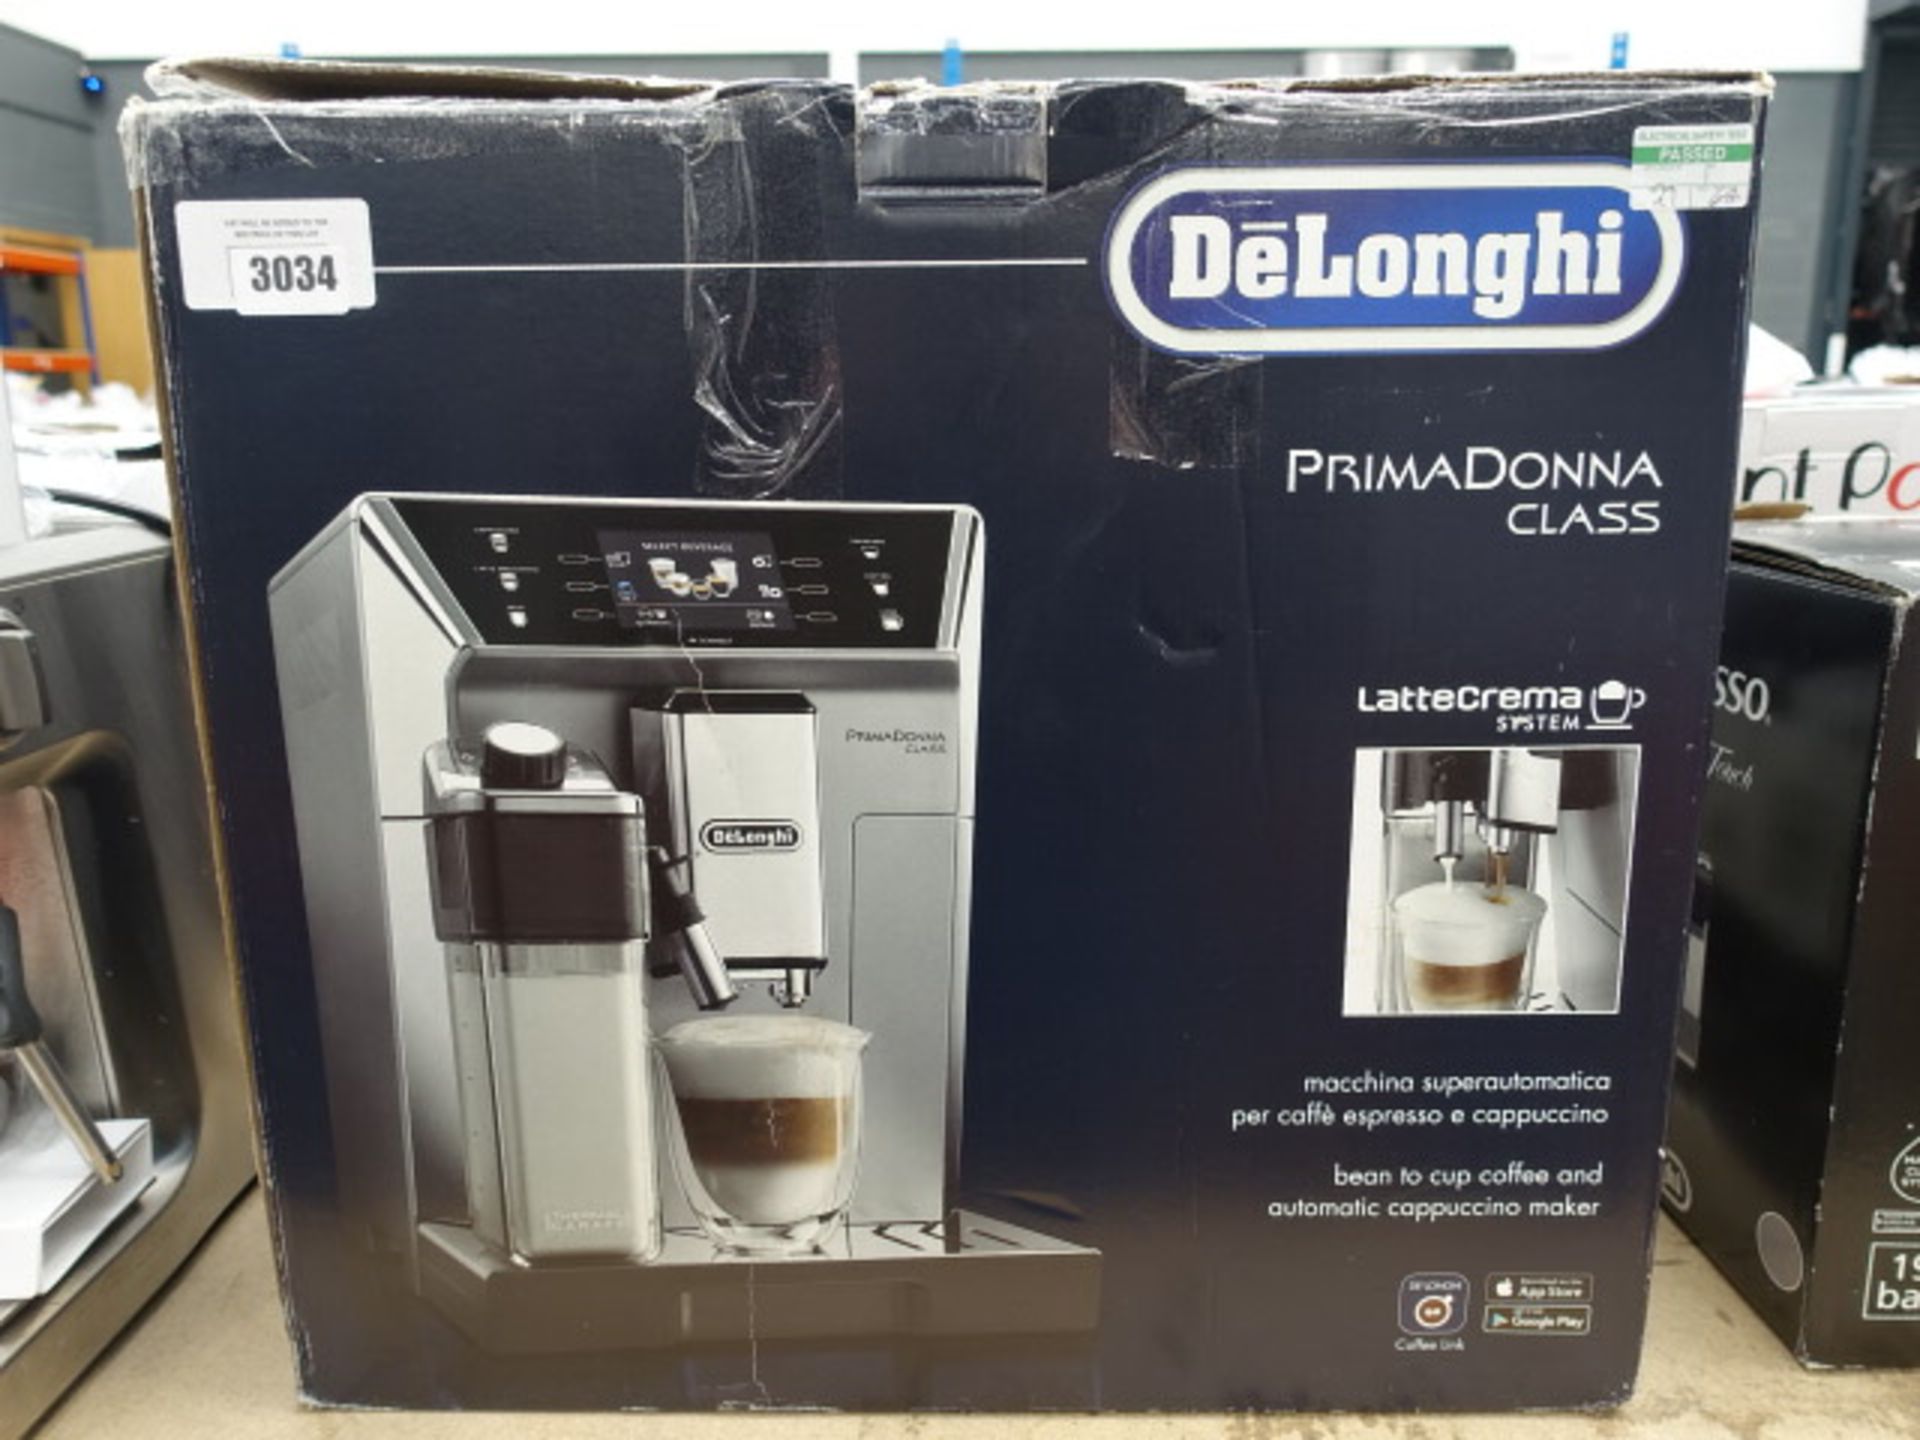 Boxed Delonghi Prima Donna class latte creamer system